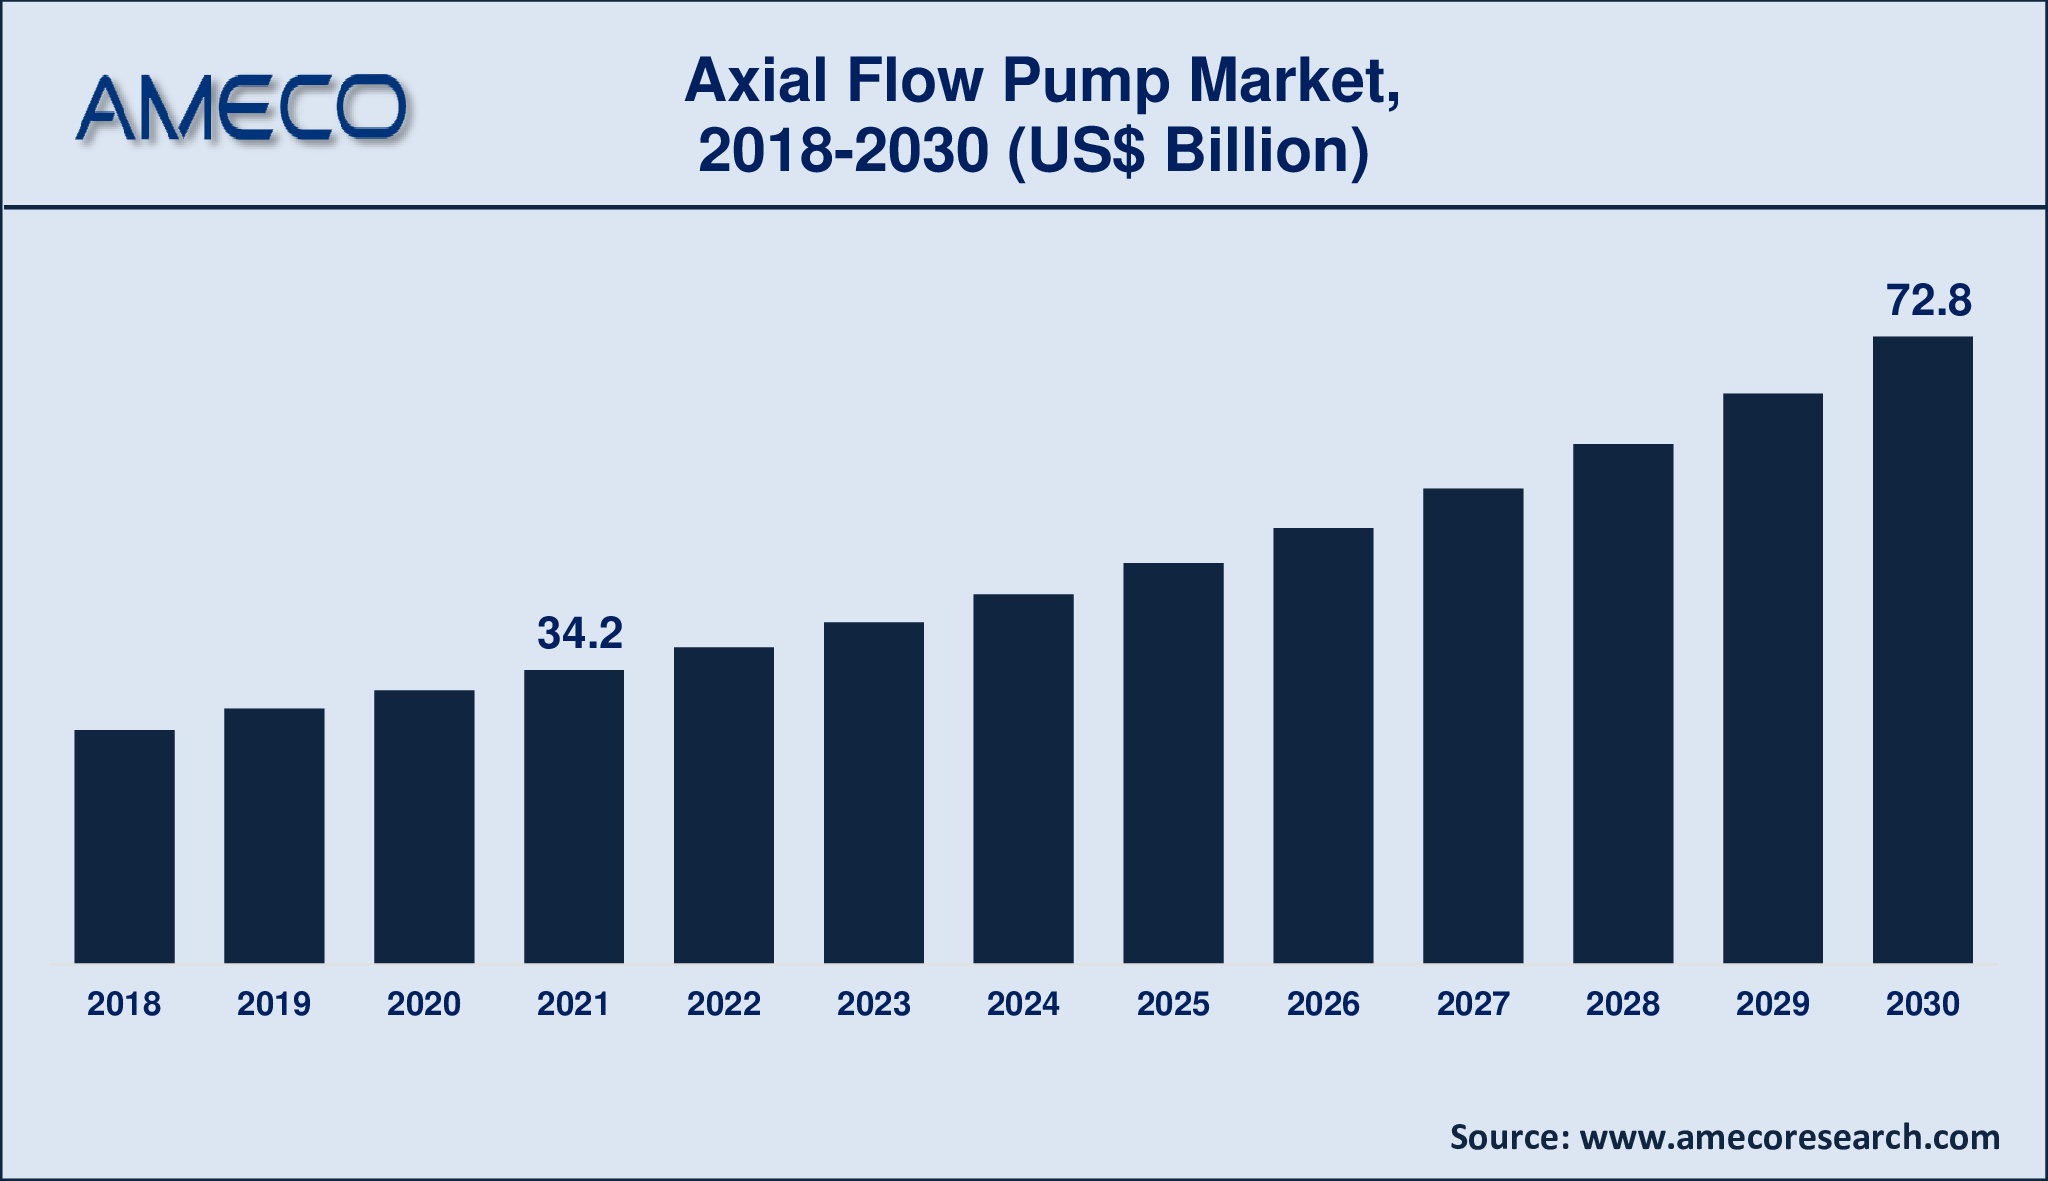 Axial Flow Pump Market Dynamics